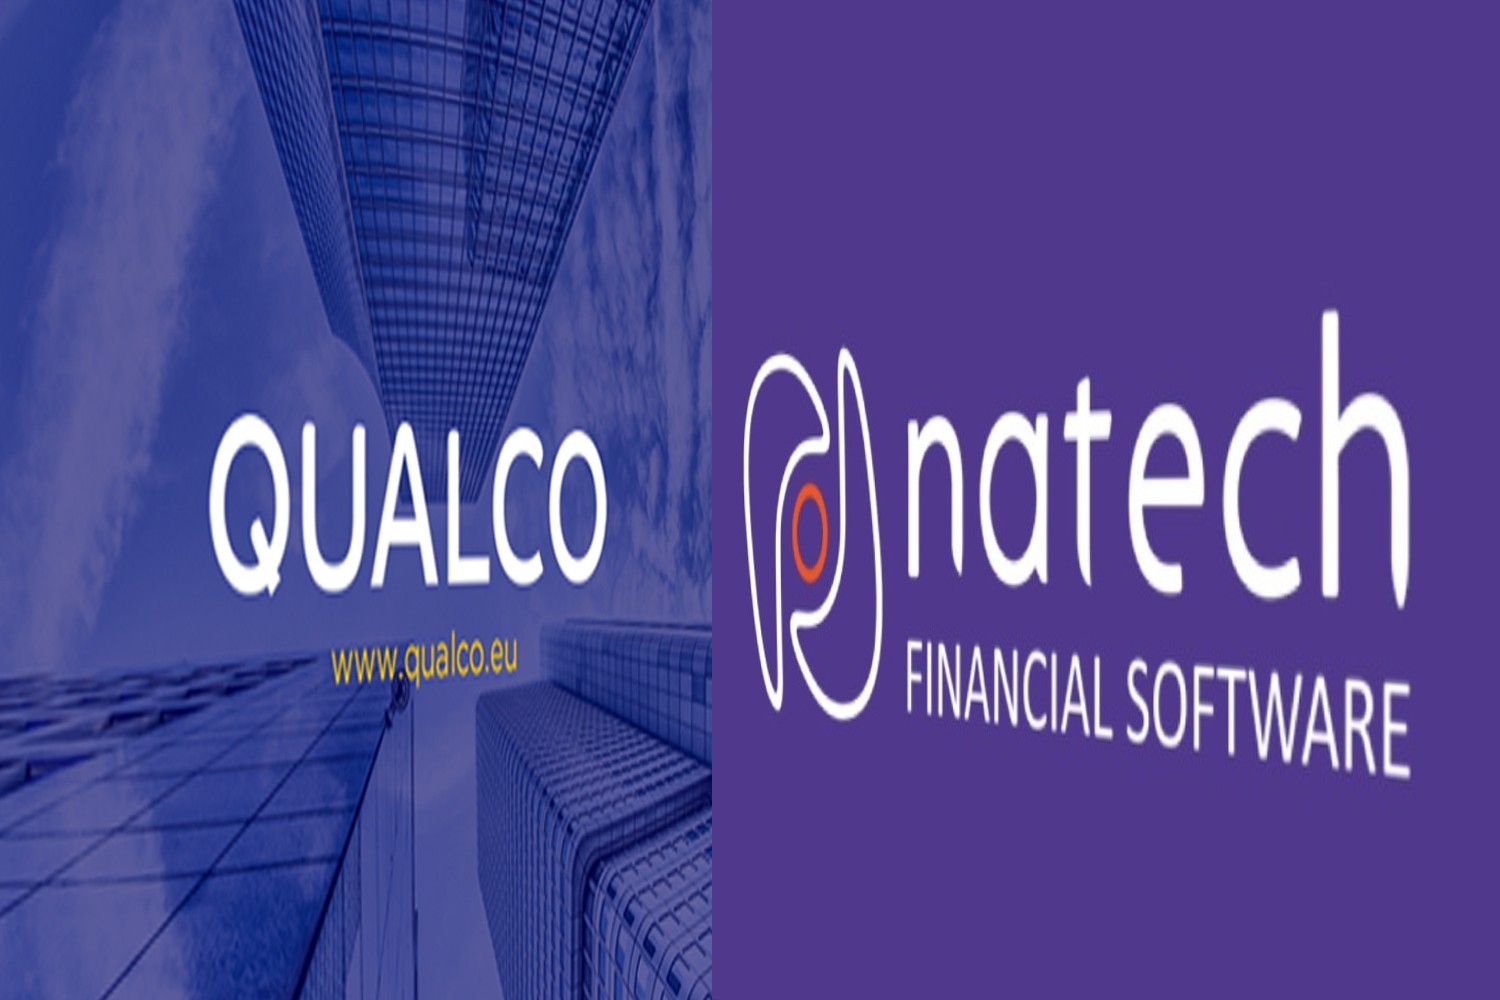 Ταμείο Παρακαταθηκών & Δανείων: Στην Natech – Qualco η υπογραφή σύμβασης για τον ψηφιακό μετασχηματισμό